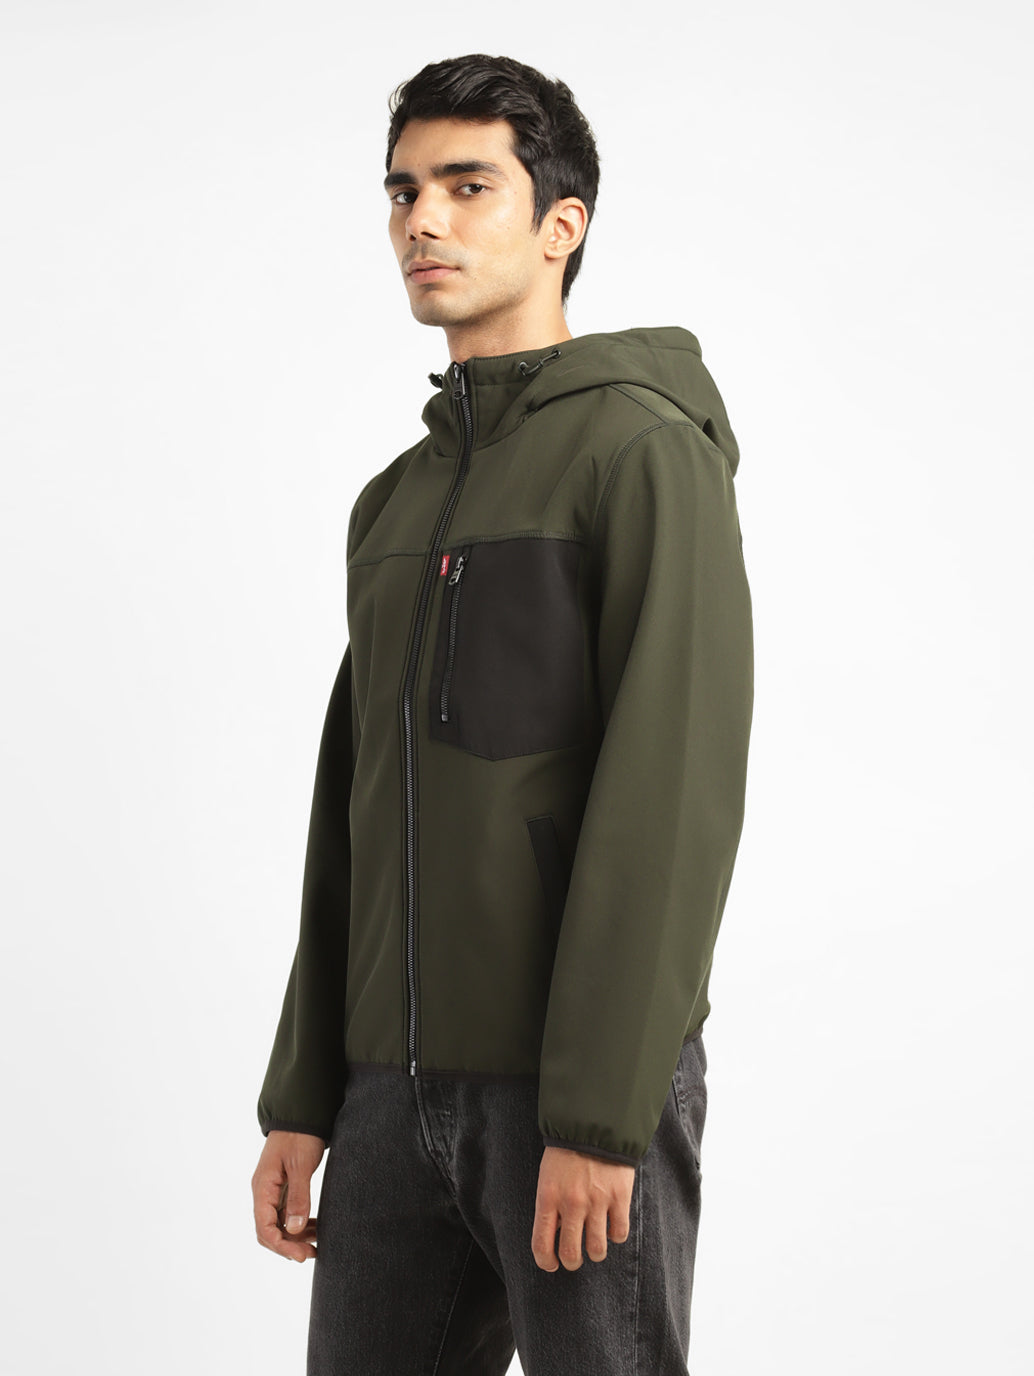 Men's Solid Olive Hooded Jacket